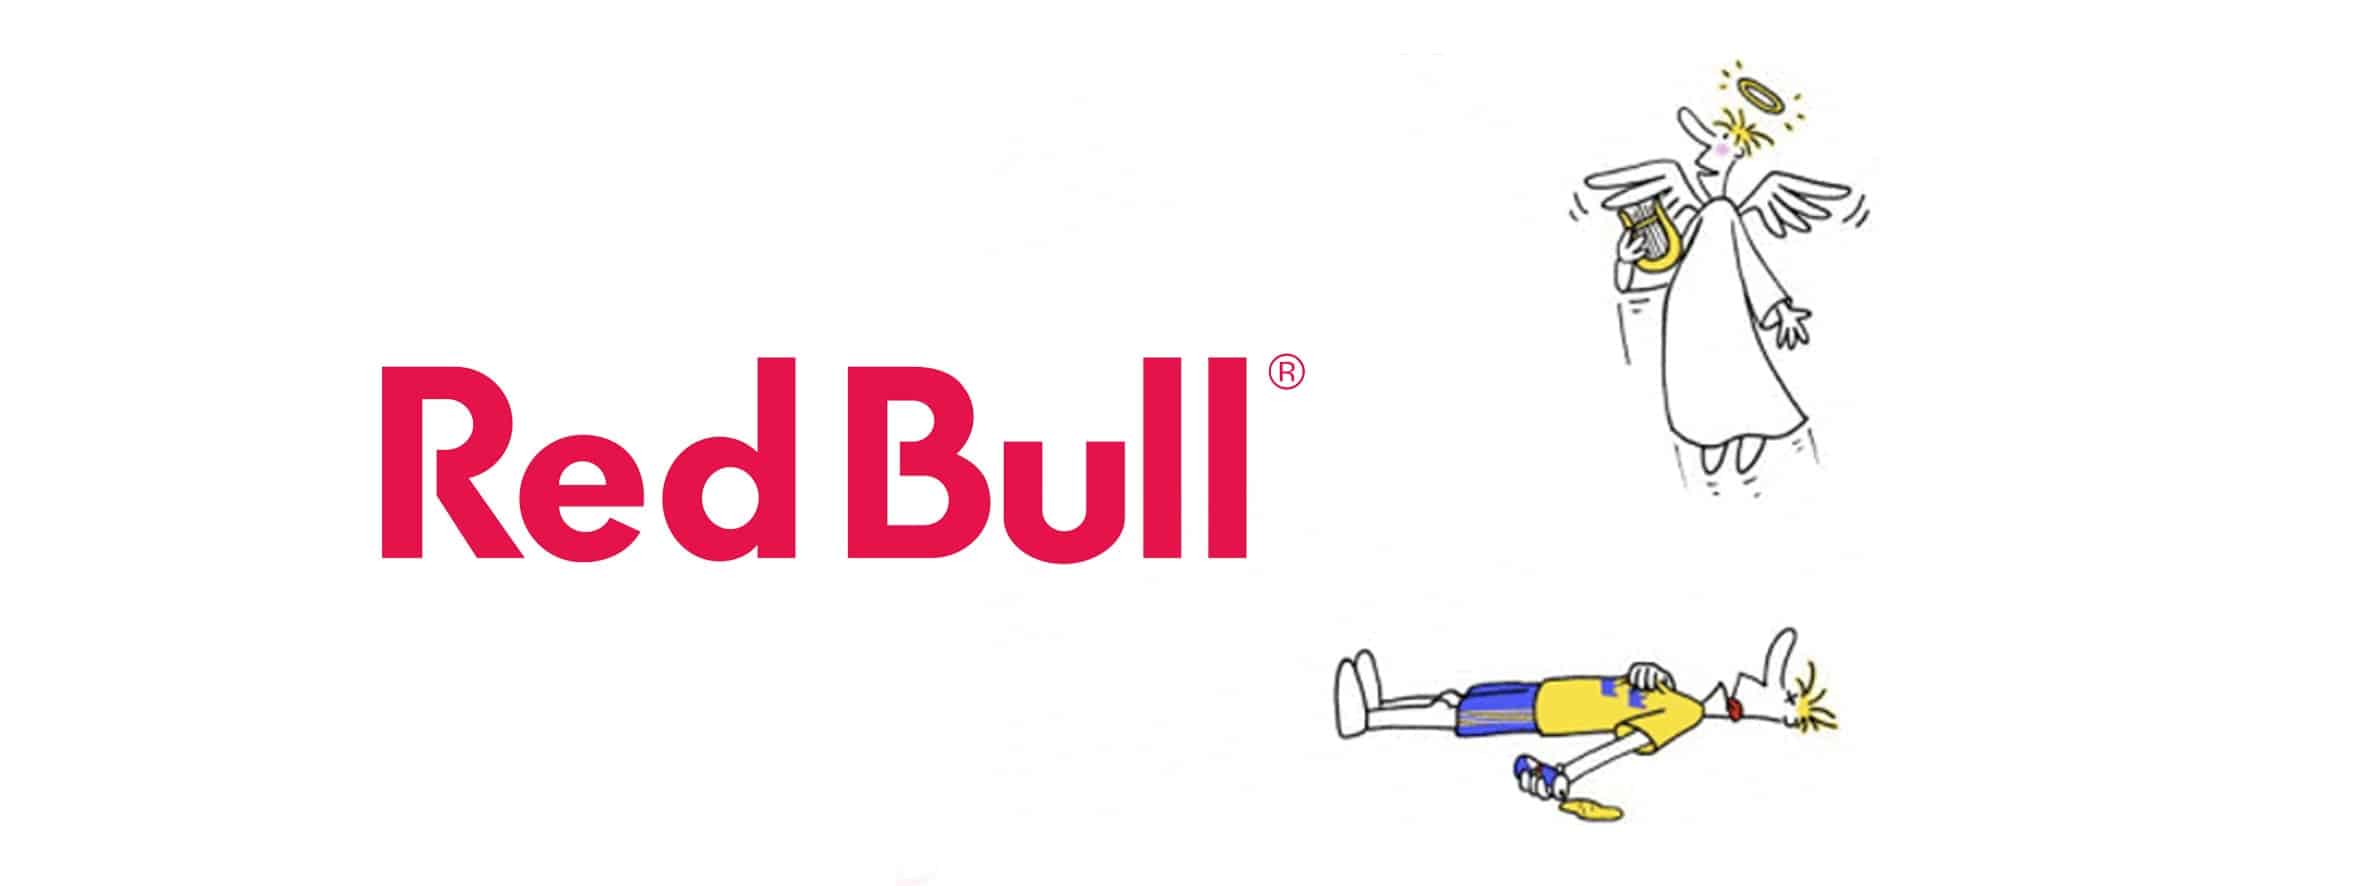 Natale Ti Mette Le Ali.Red Bull Non Ti Mette Le Ali E Scatta Una Sanzione Da 13 Milioni Di Dollari Ducklab